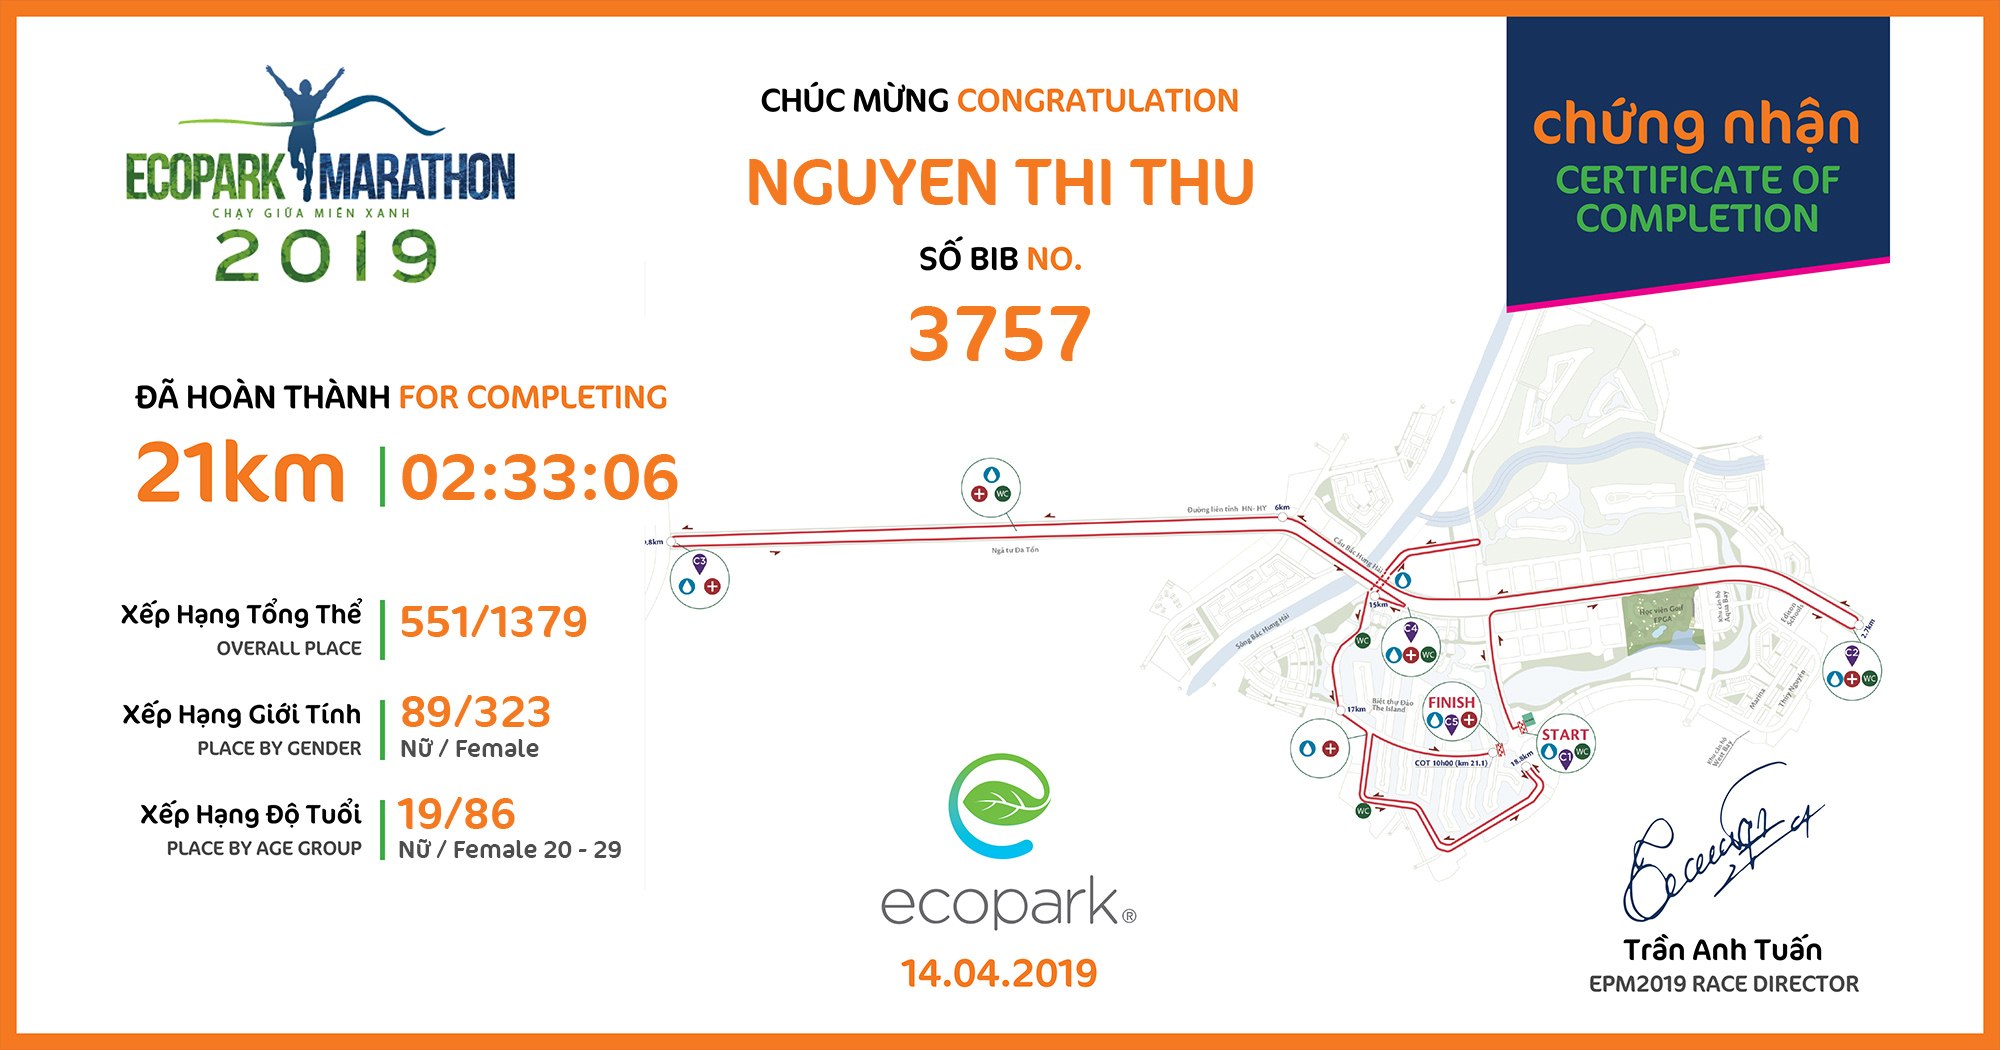 3757 - Nguyen Thi Thu